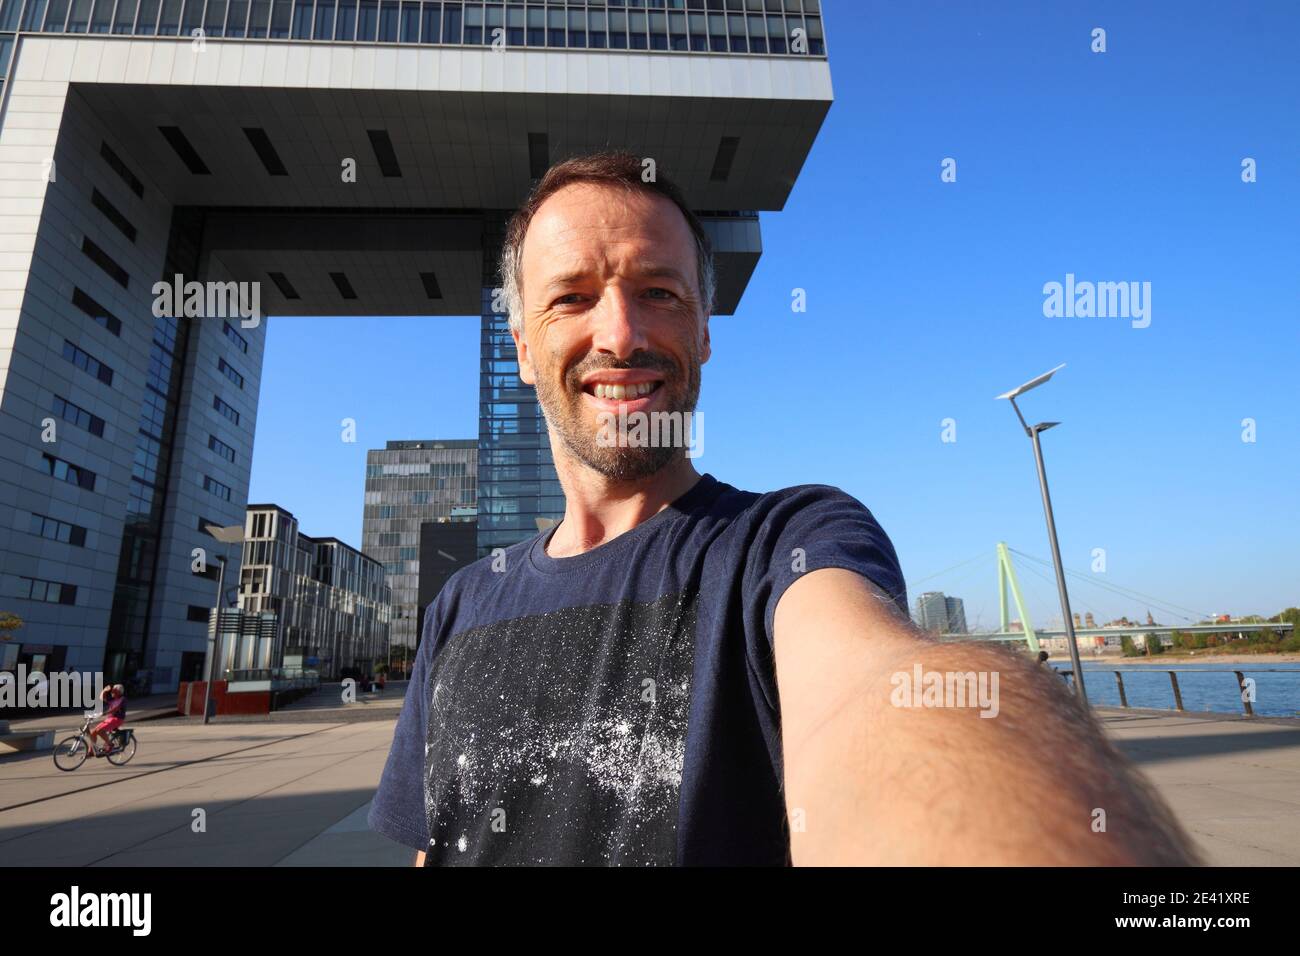 Selfie touristique à Cologne, Allemagne. Voyageur selfie avec Rheinauhafen quartier moderne de Cologne. Banque D'Images